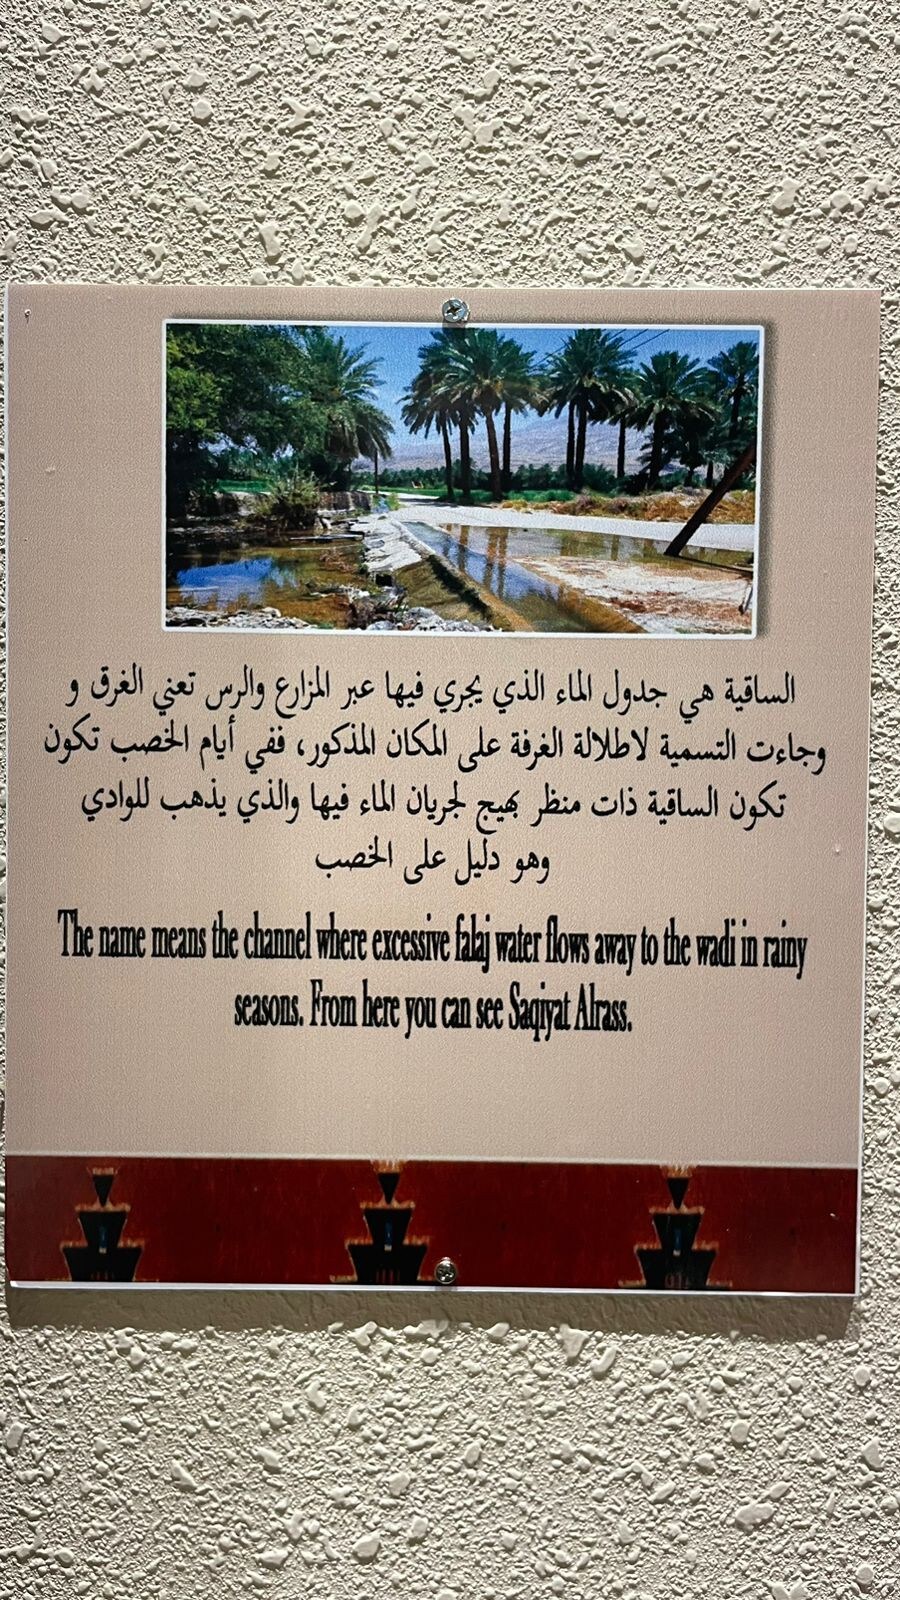 Saqiyat Alrass Room - Al Hamra Mountain View